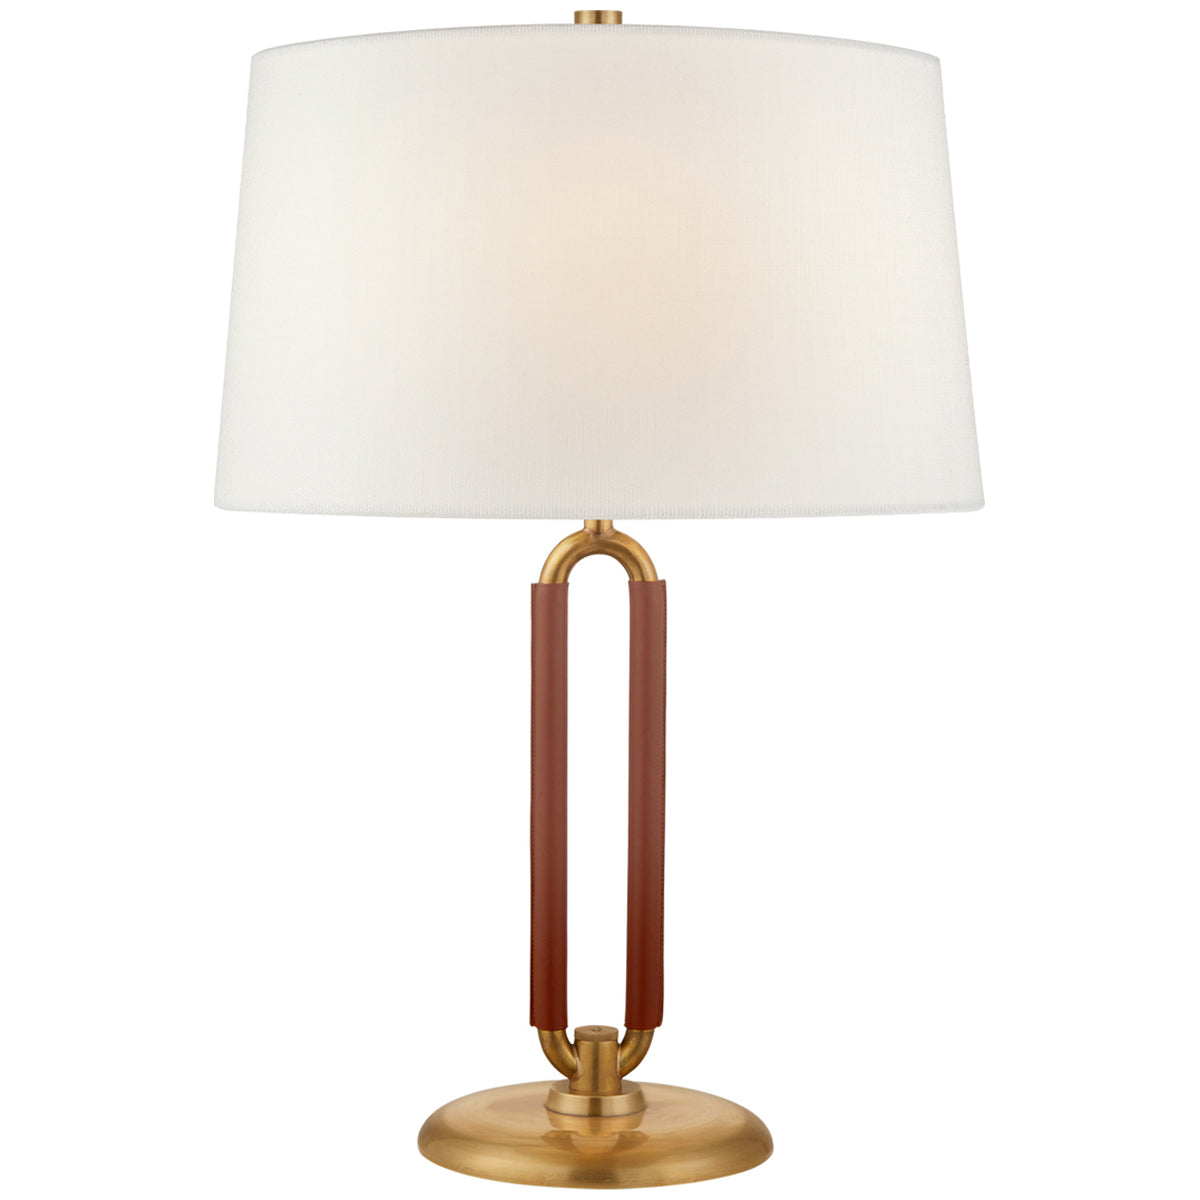 Visual Comfort Cody Medium Table Lamp